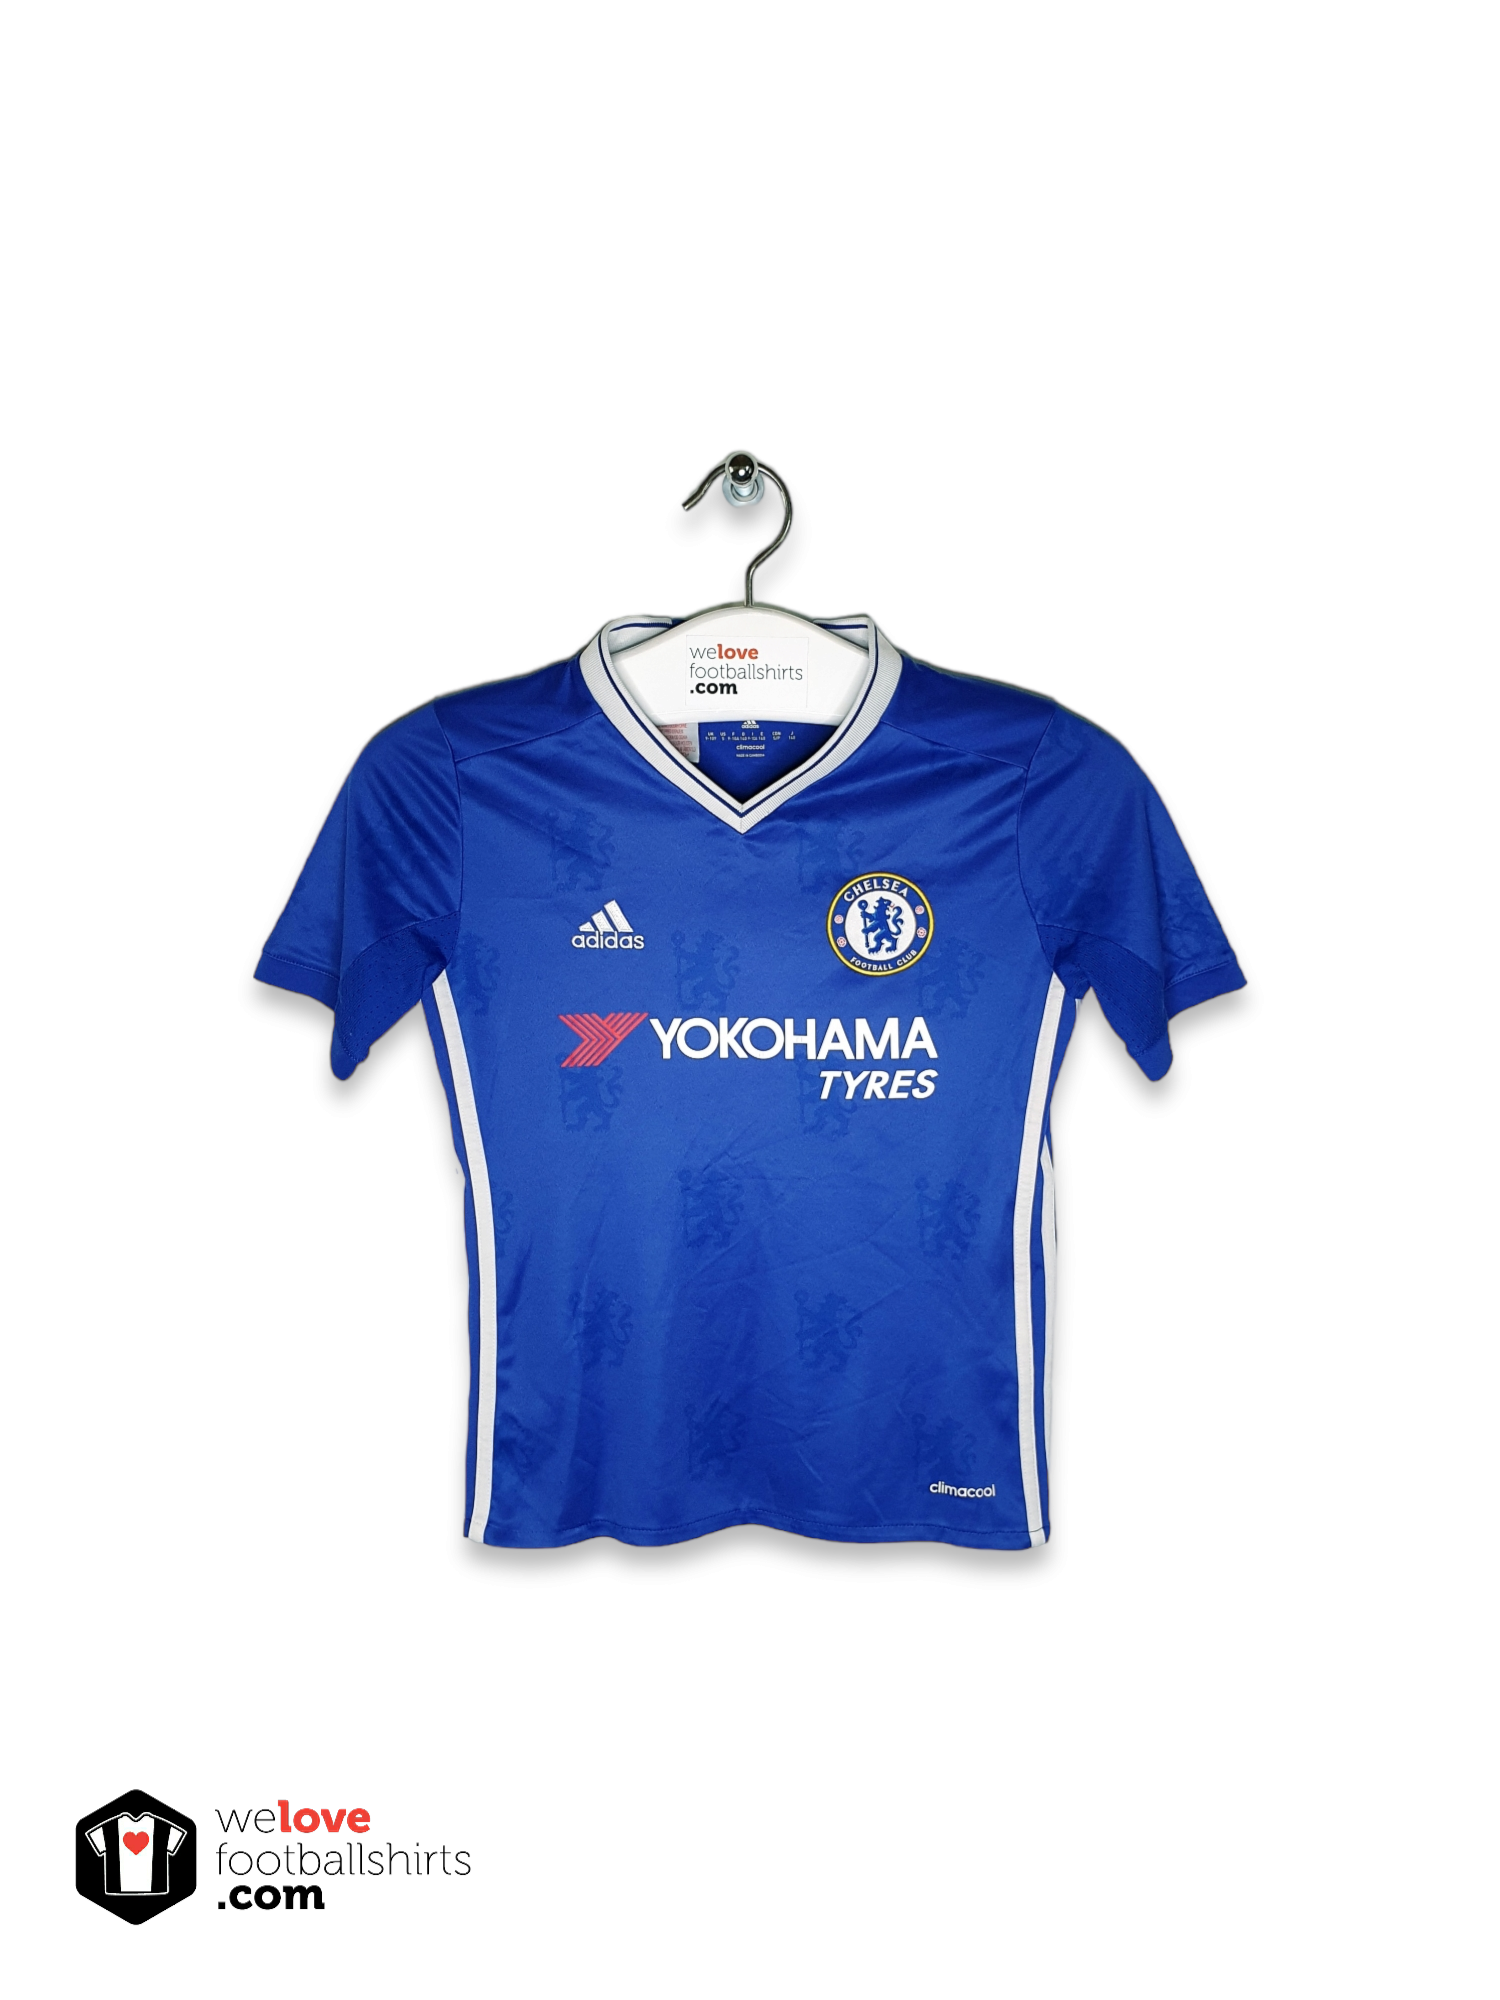 bijwoord boog Uitmaken Adidas voetbalshirt Chelsea 2016/17 - Welovefootballshirts.com